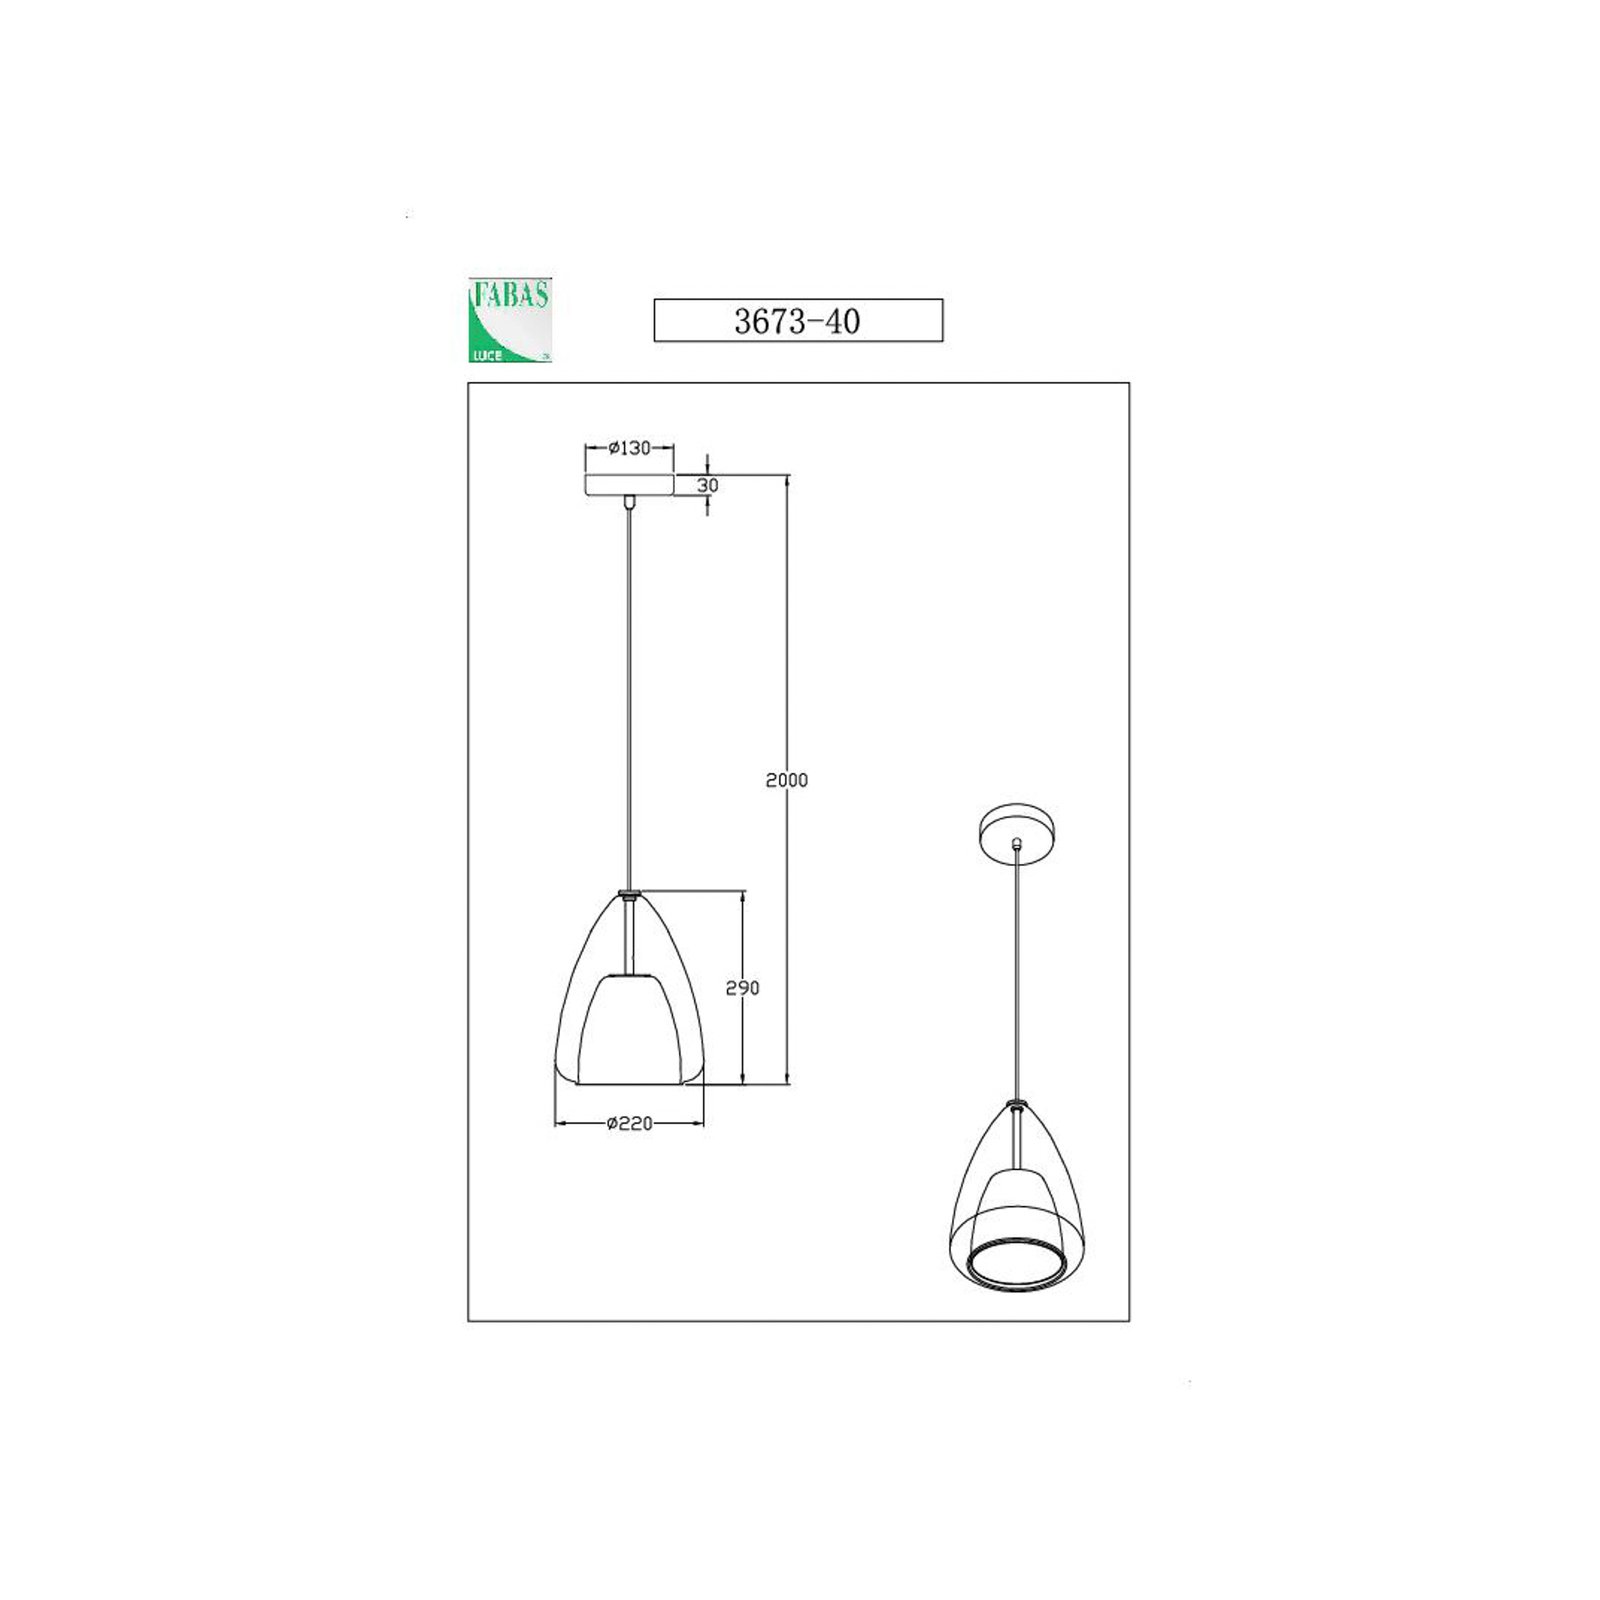 Britton lampă suspendată, 1-lumină, gri-transparent, sticlă